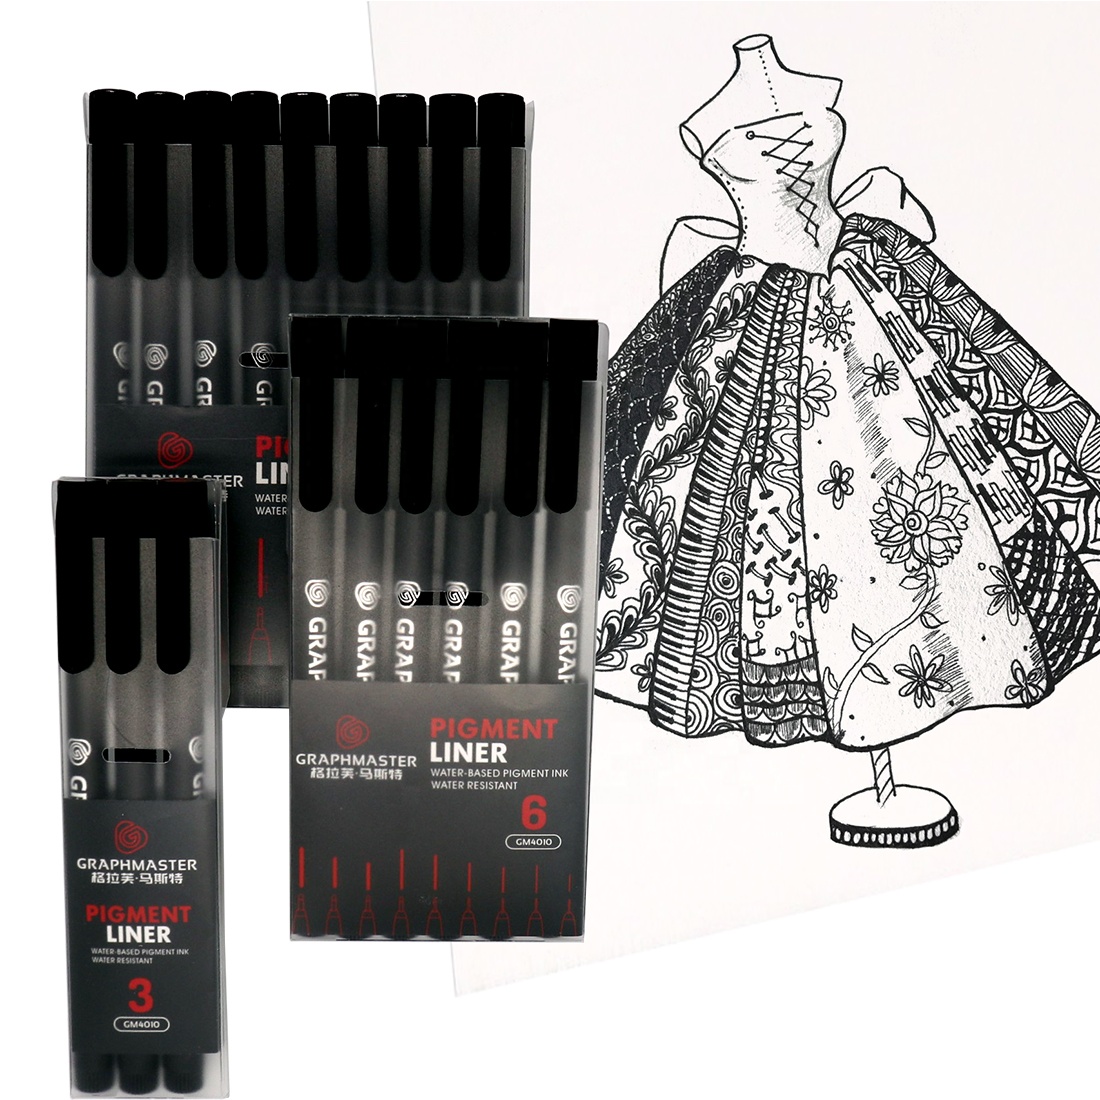 9 tamaños Fineliner negro Pigment Pigment Pen Micro Needle Sketch Drawing Drawing Art School Supplies1